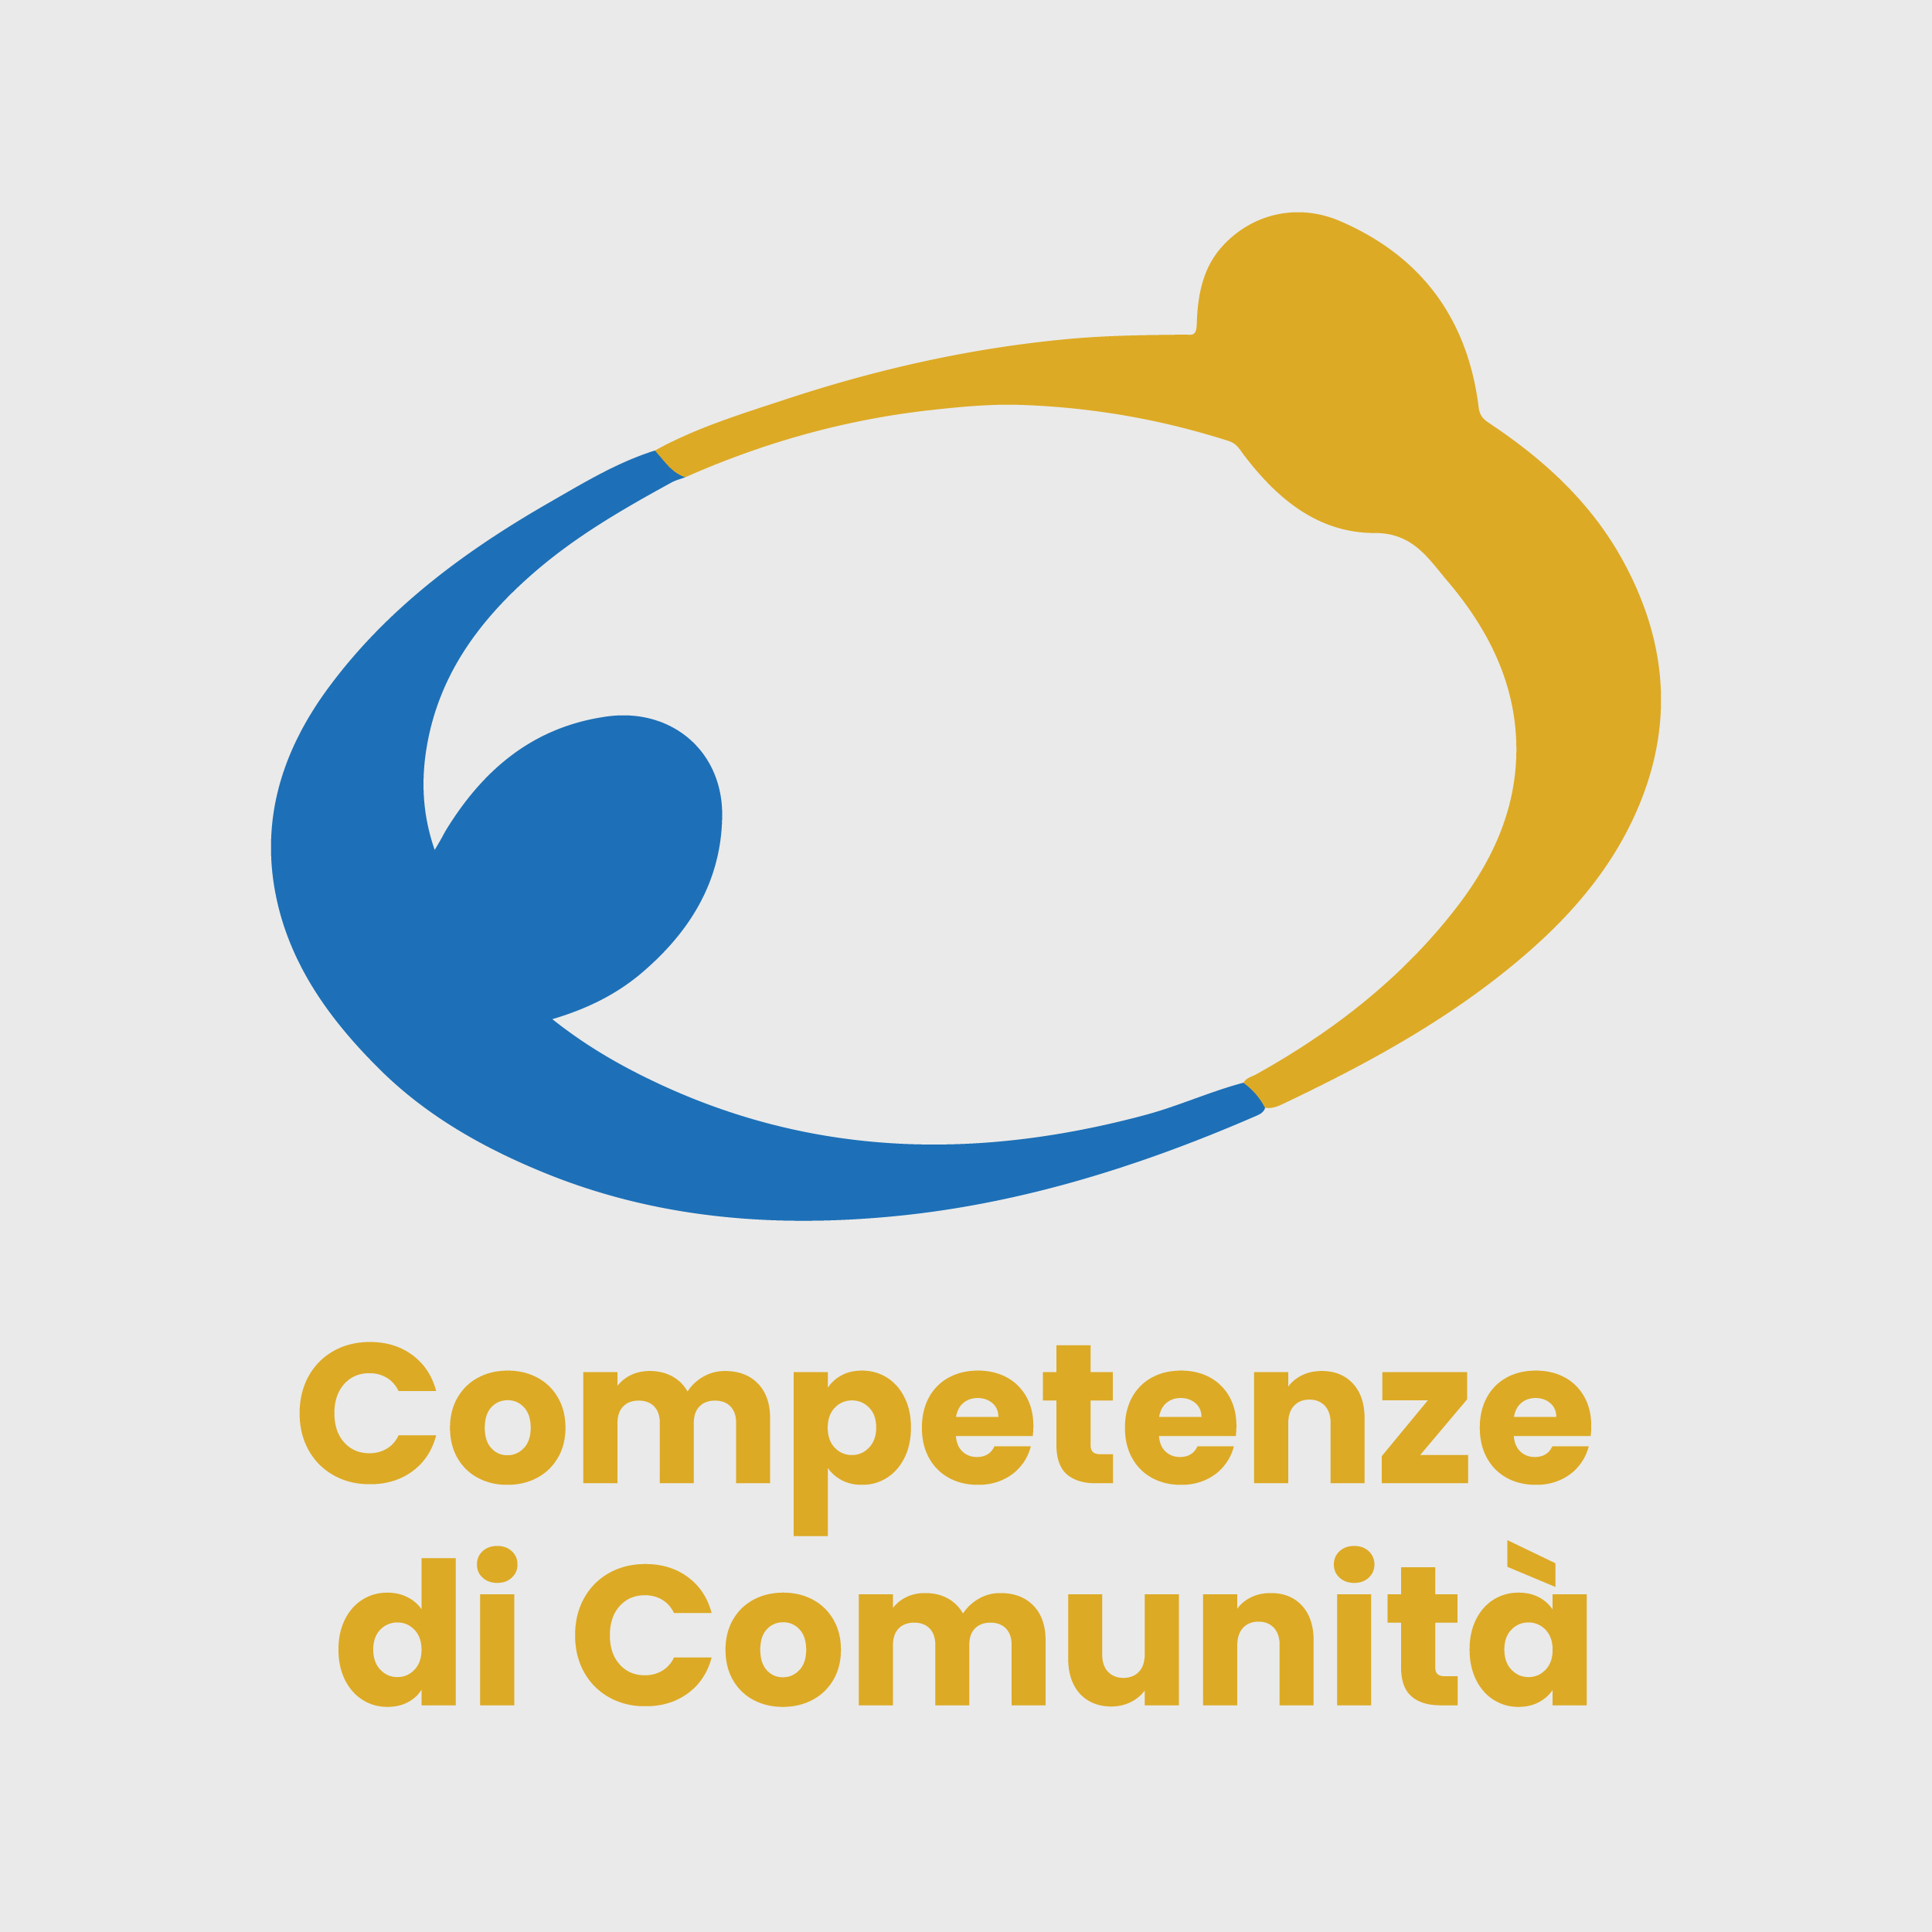 competenze_di_comunita-01